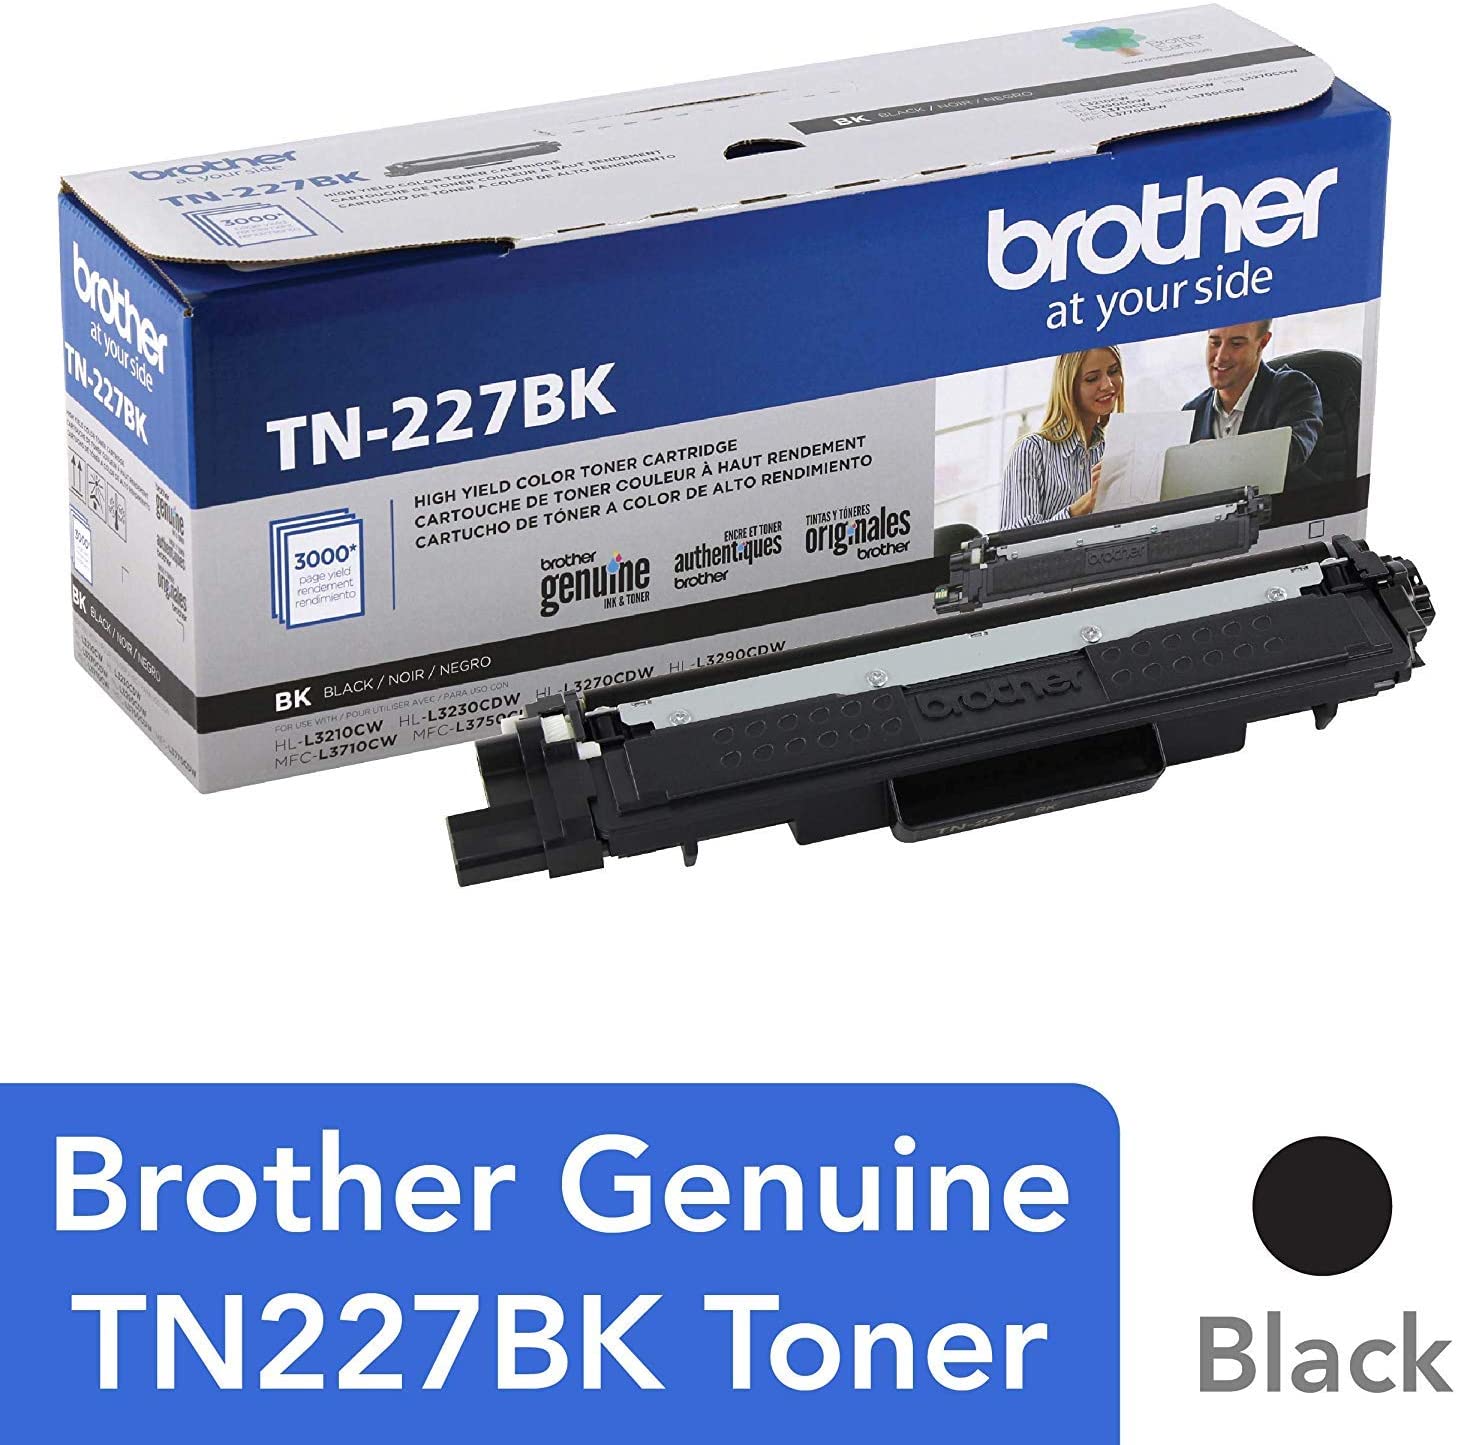 کارتریج تونر مشکی TN-277BK برادر از تونرهای لیزری شرکت " Brother " میباشد. هر کارتریج دارای قطعات ، درام کارتریج ،چیپست کارتریج ، مگنت و فوم کارتریج است .